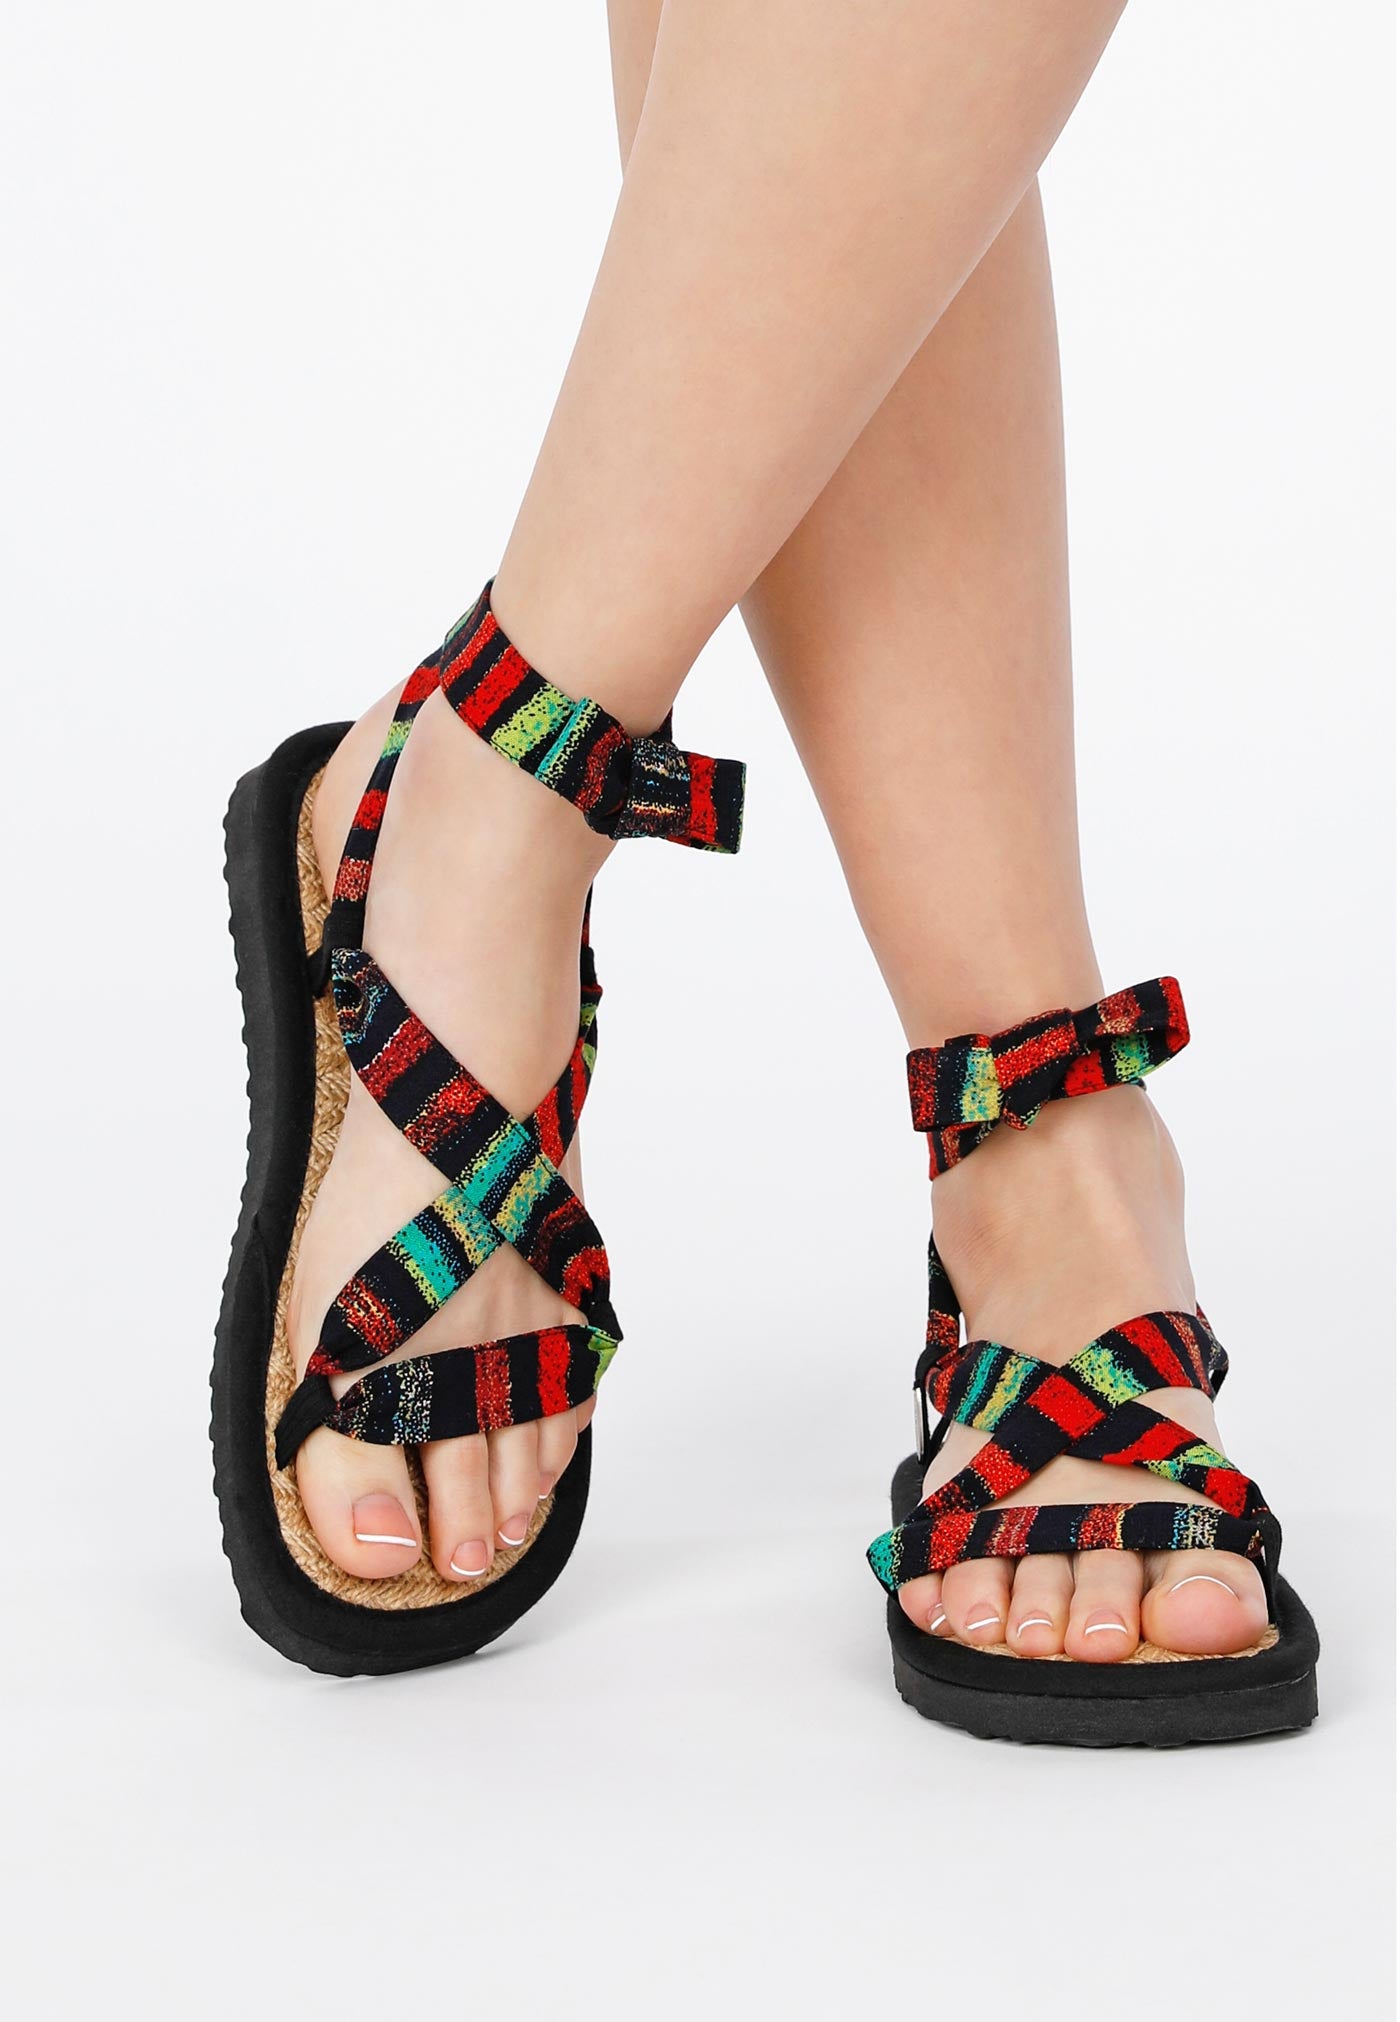 Sandale mit verstellbaren Riemchen aus buntem Stoff, getragen von einem weiblichen Modell